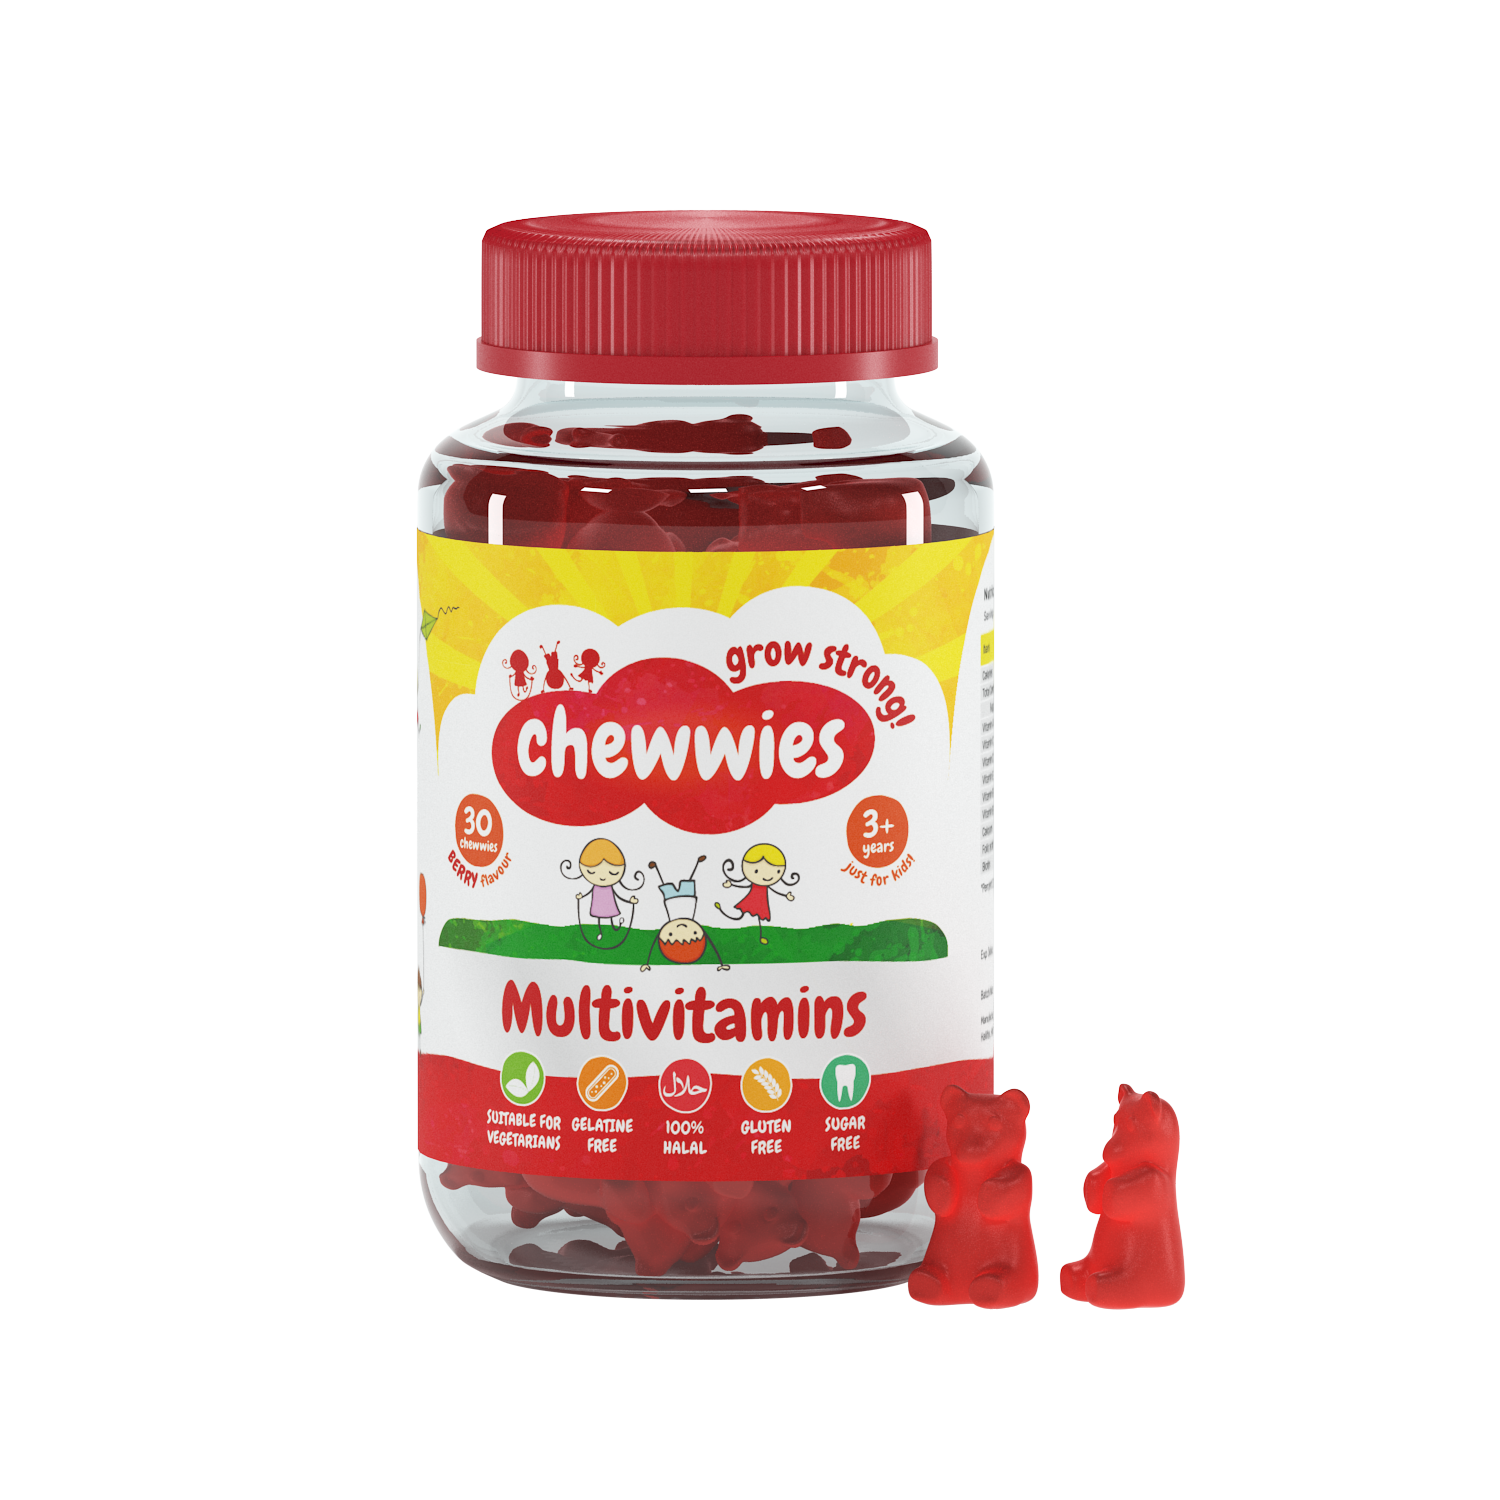 Chewwies Multivitaminici e micronutrienti in 30 caramelle gommose vegane, n. 1 negli UK vitamina (essenziale) senza gelatina e senza zucchero